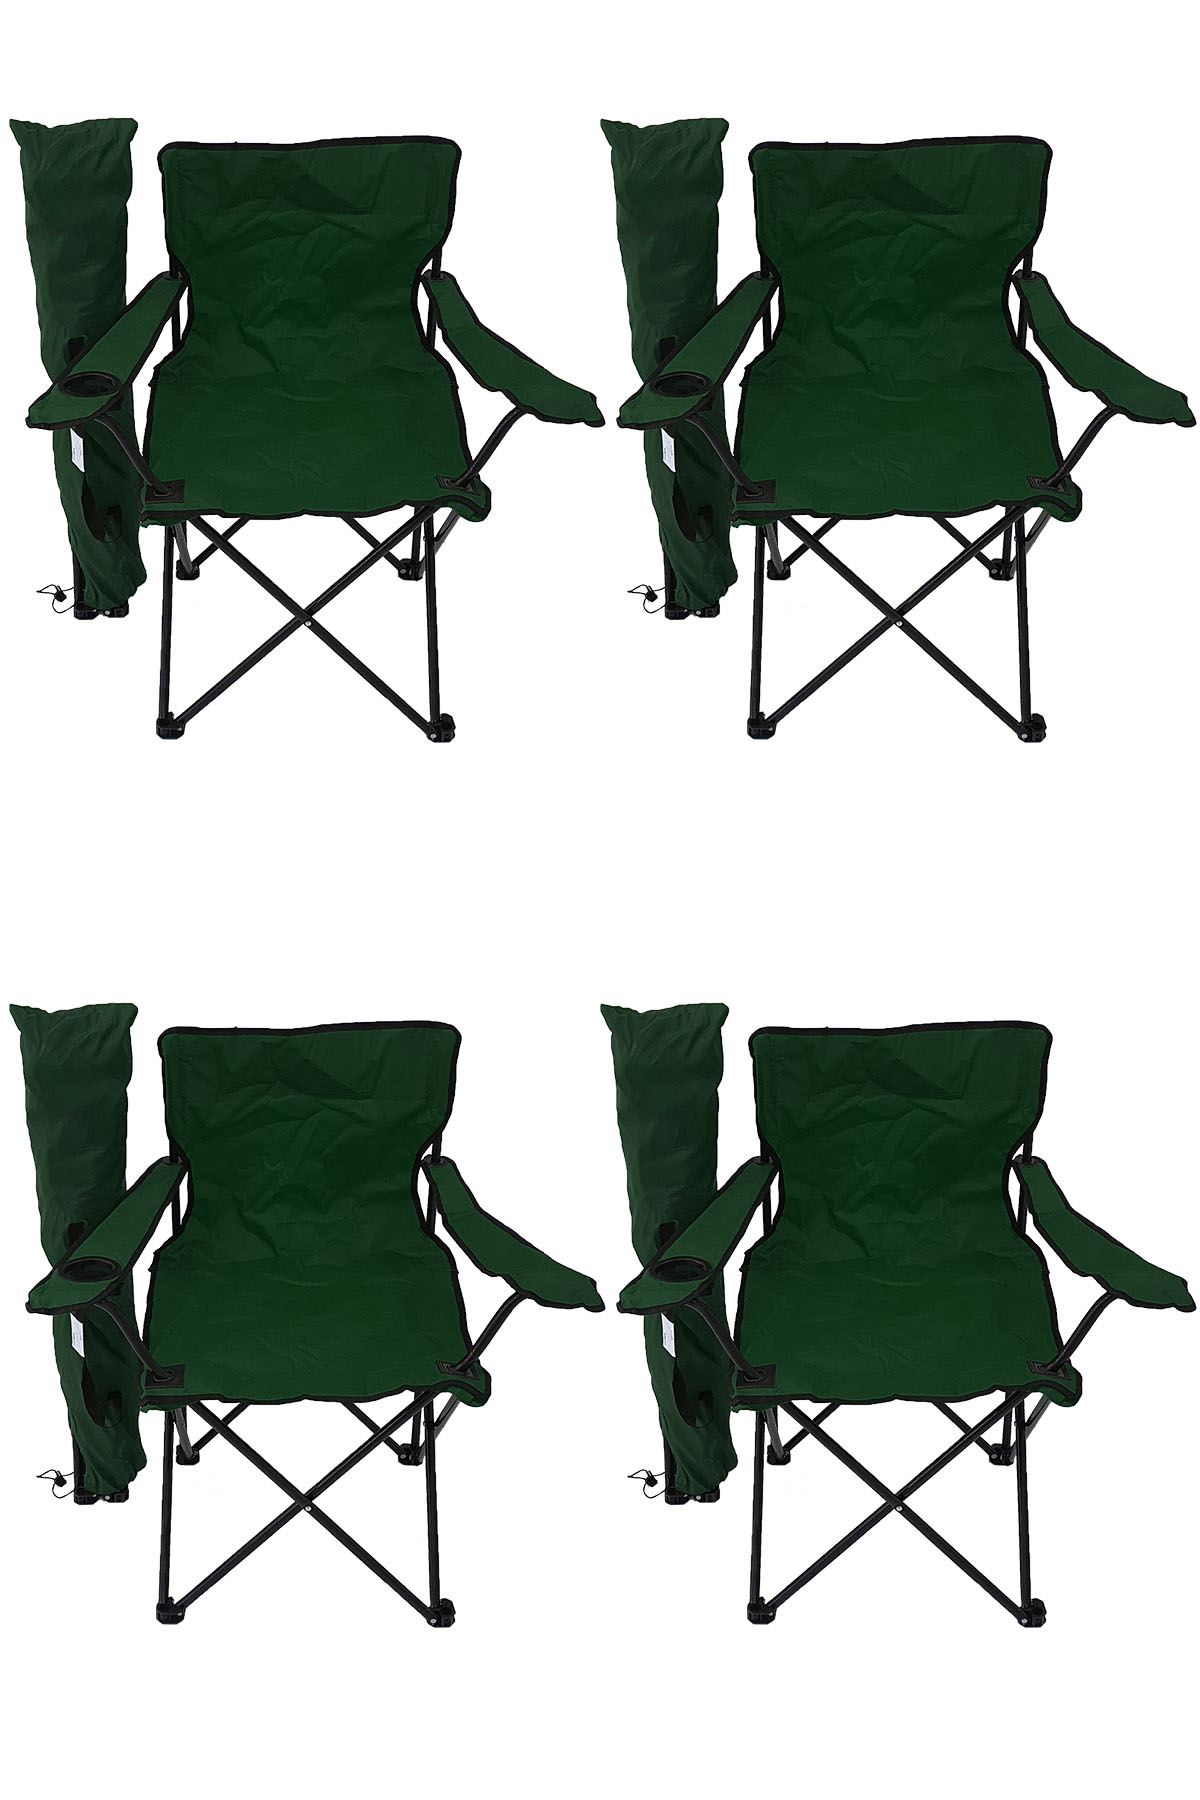 Bofigo 4'lü Kamp Sandalyesi Piknik Sandalyesi Katlanır Sandalye Taşıma Çantalı Kamp Sandalyesi Yeşil